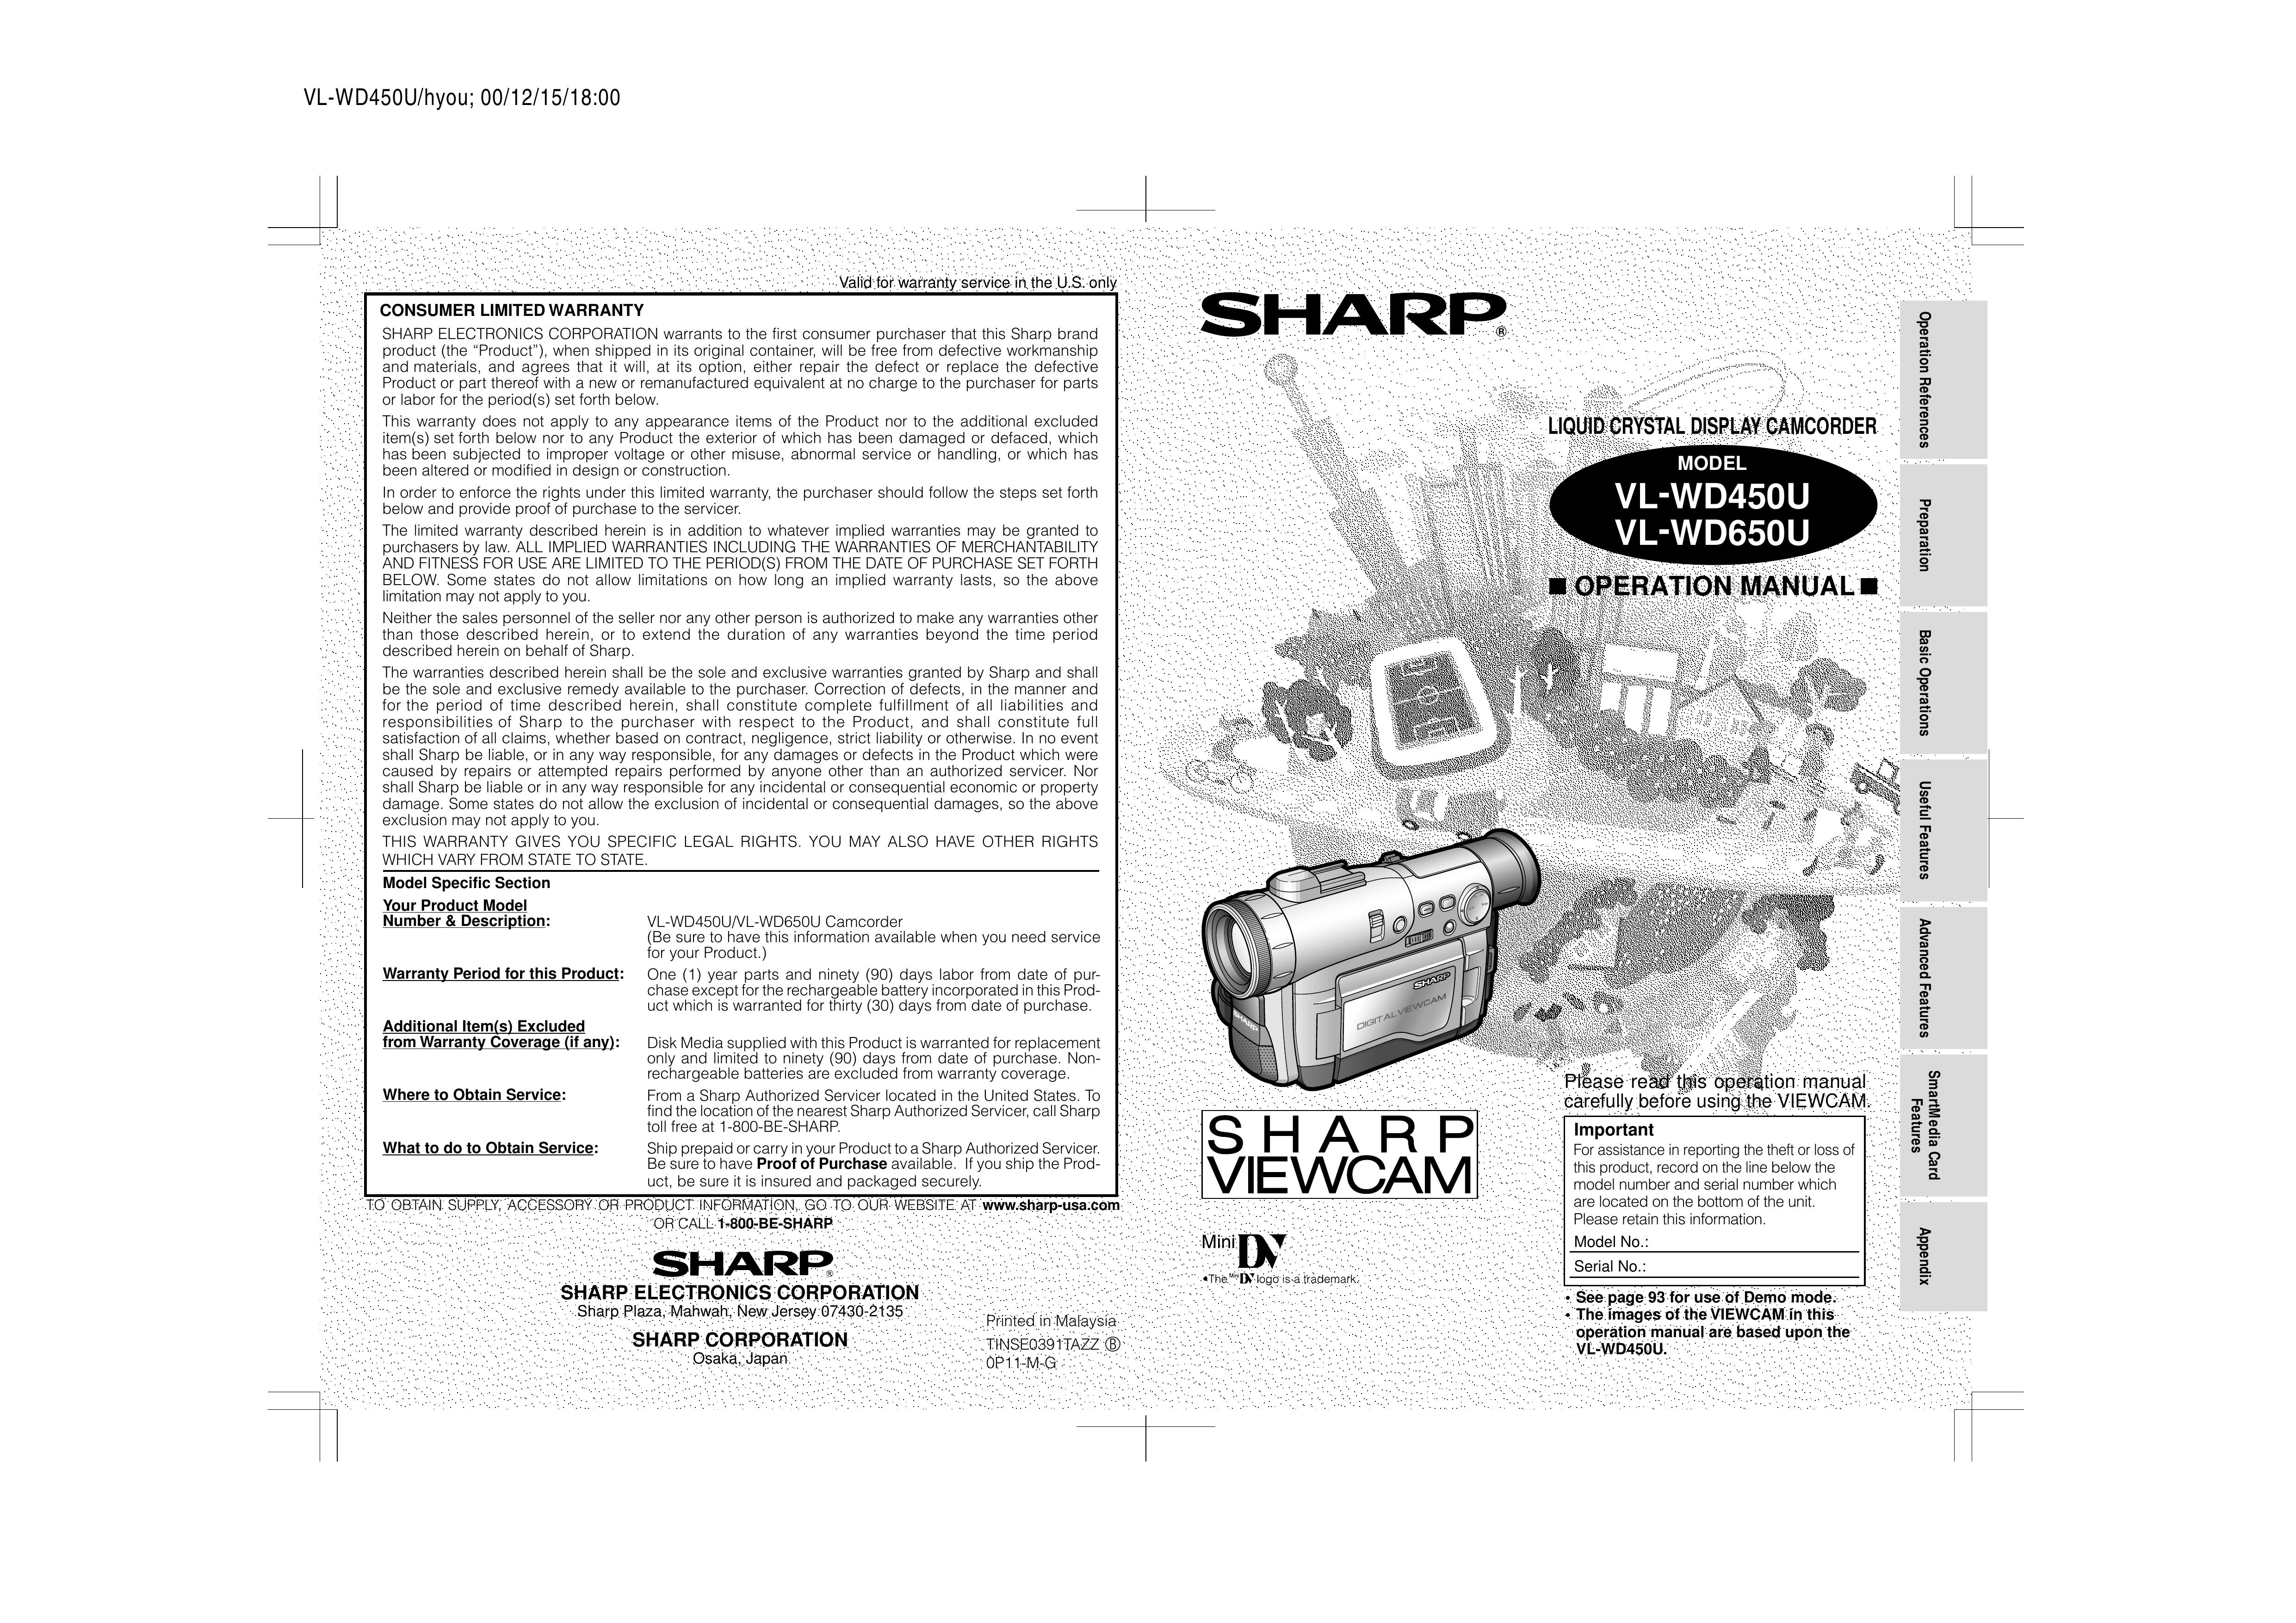 Sharp VL-WD650U Camcorder User Manual